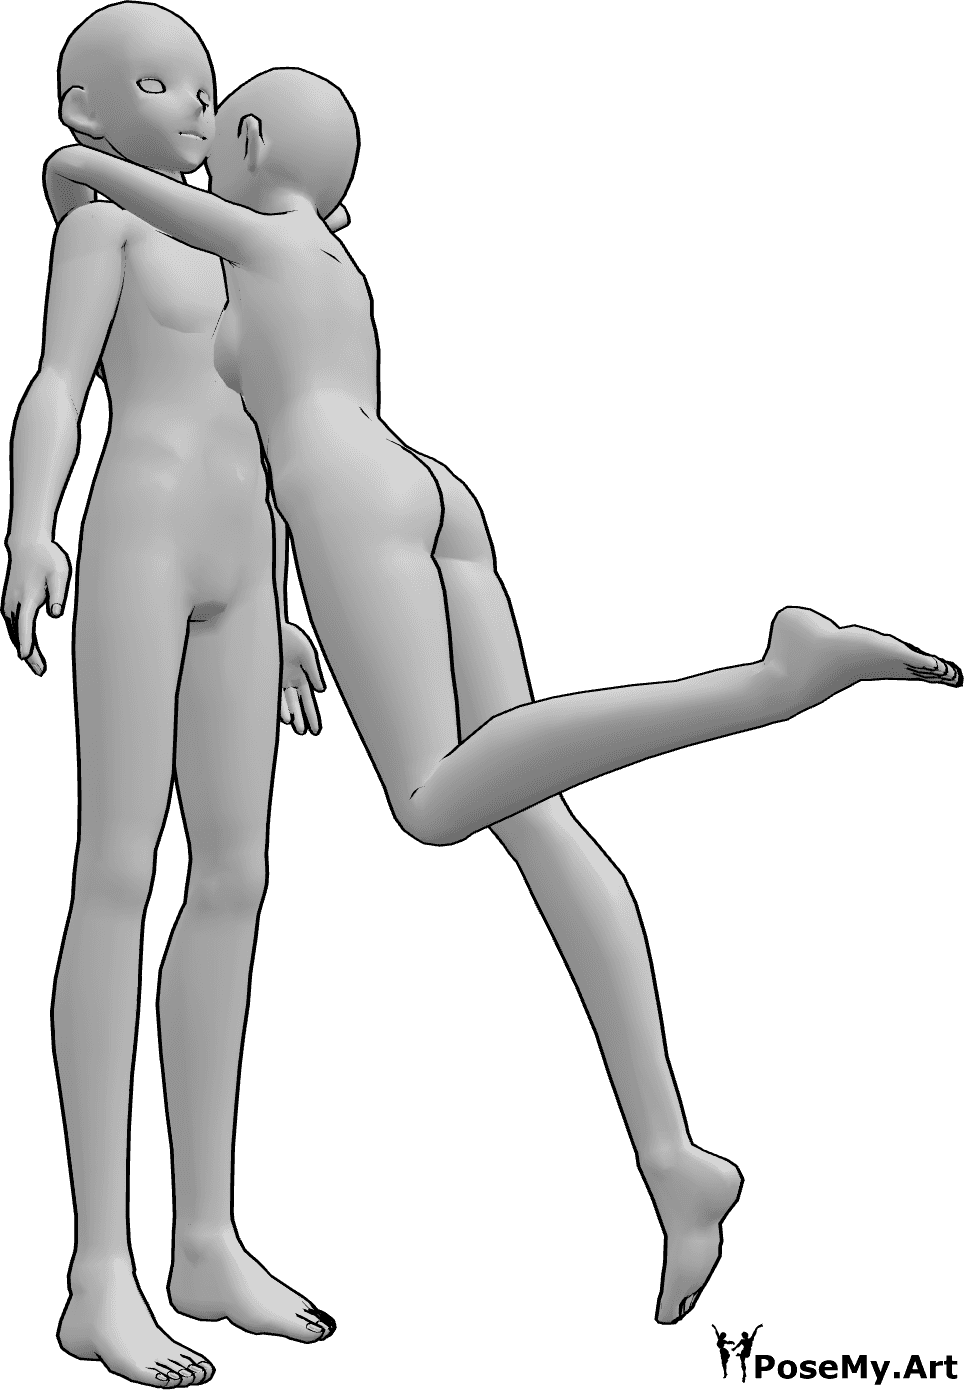 Référence des poses- Pose d'étreinte surprise de l'anime - Une femme anime saute et étreint un homme, pose d'étreinte surprise anime